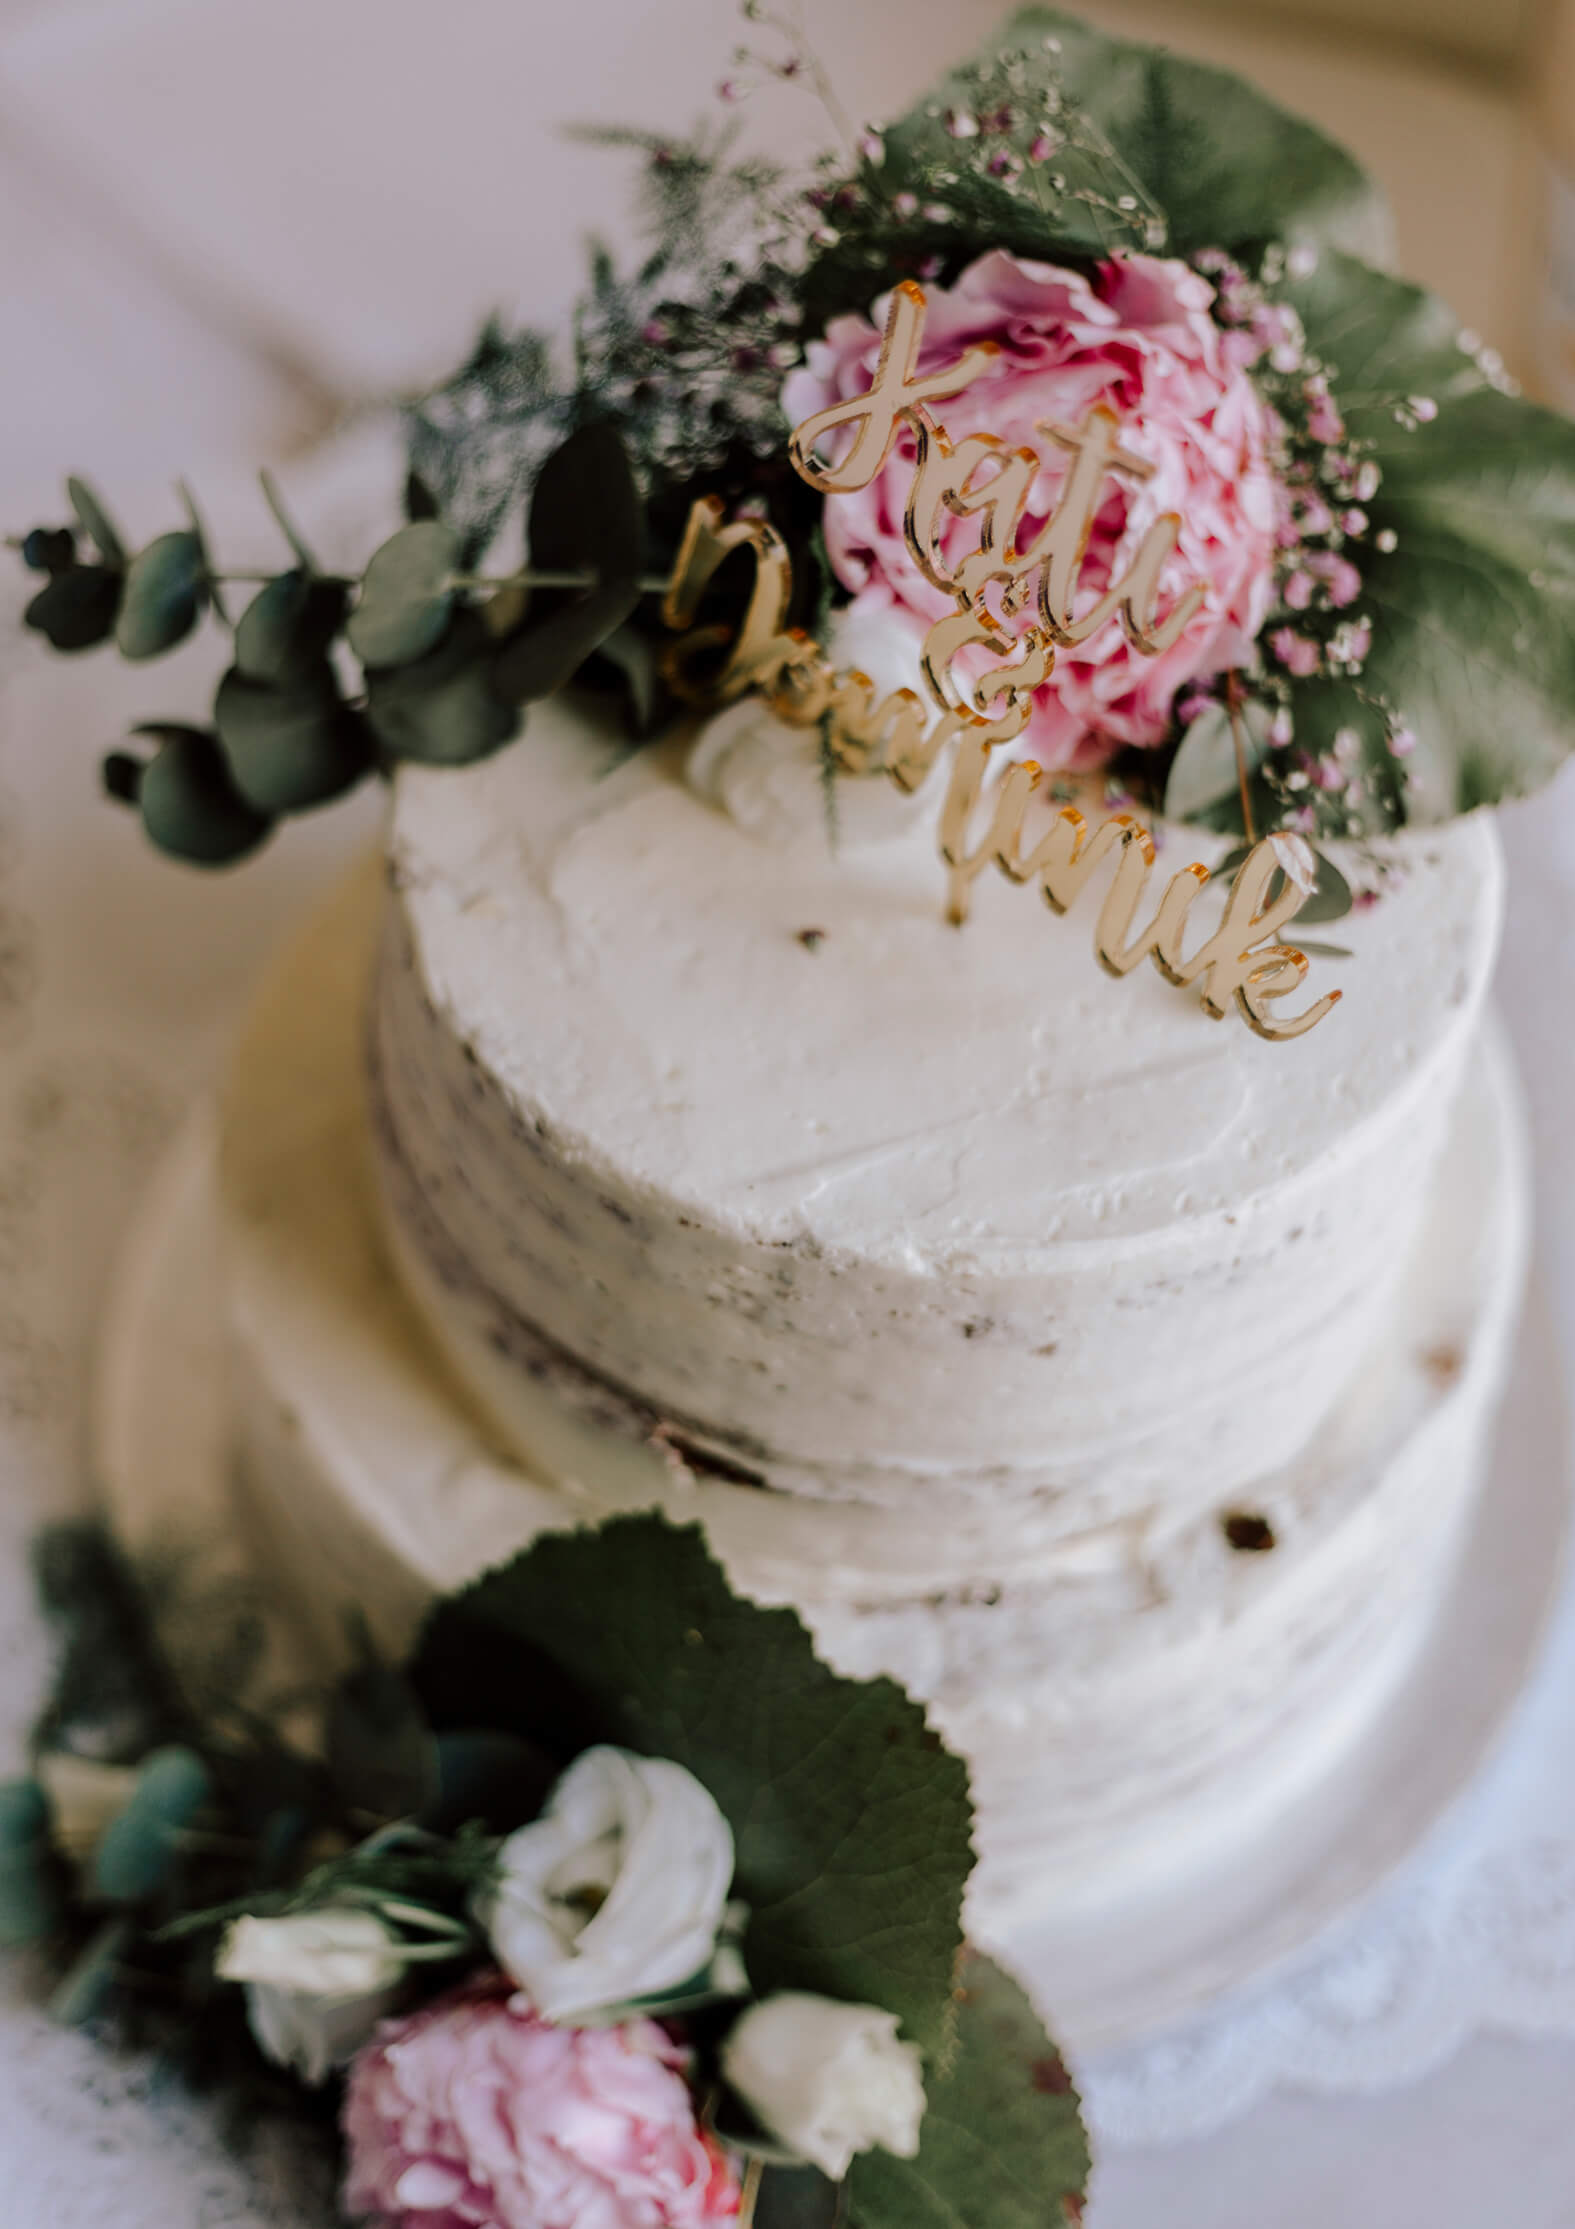 Wedding-Update-Dinner-Location-Wedding-Cake-Sugarbird-Cupcakes-Kationette-Lifestyleblogger-NRW